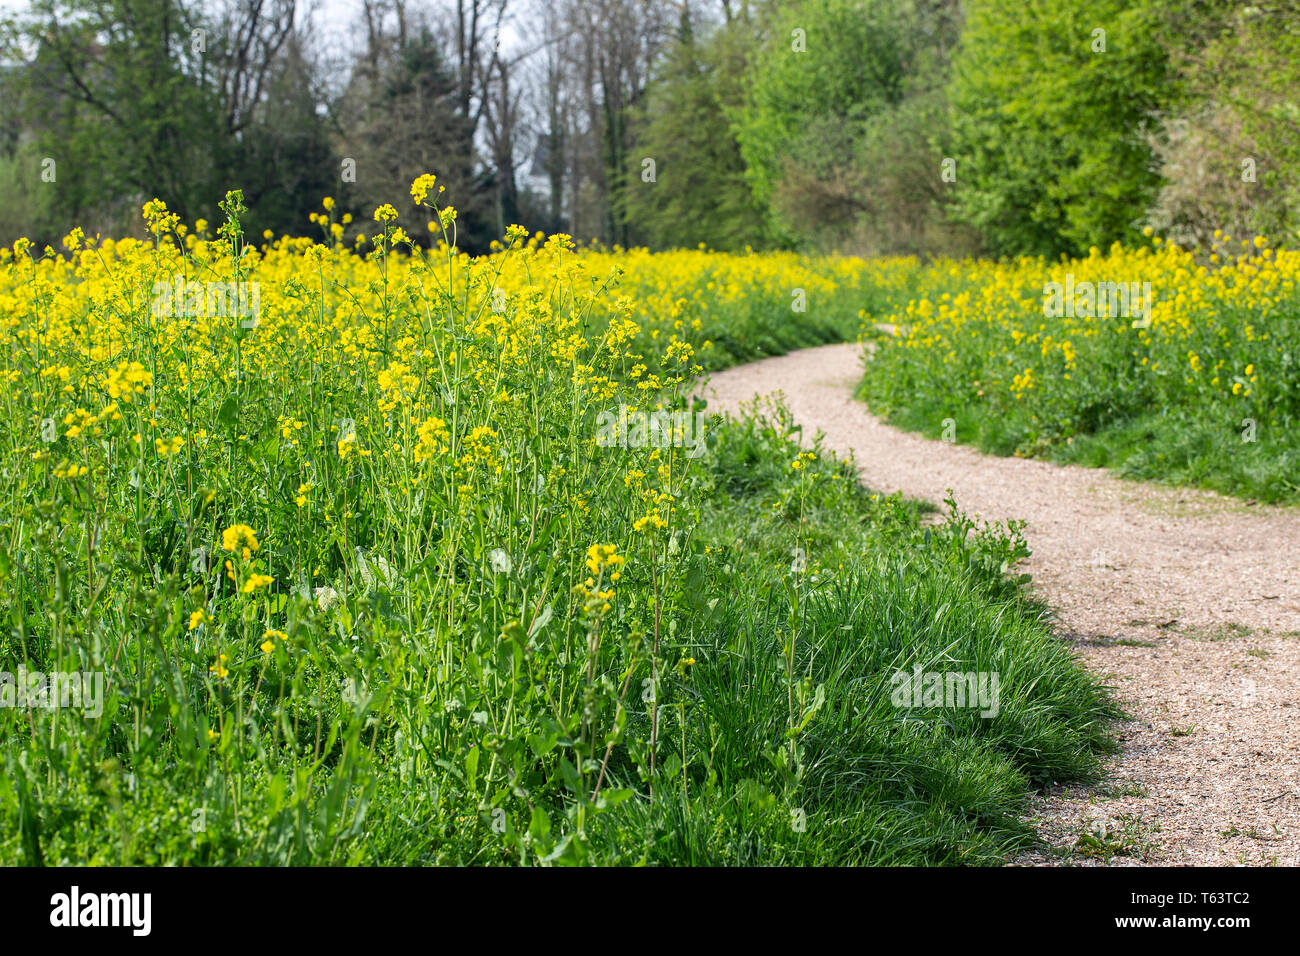 Sentier bordé par la floraison de la moutarde sur le terrain (Brassica rapa) Banque D'Images